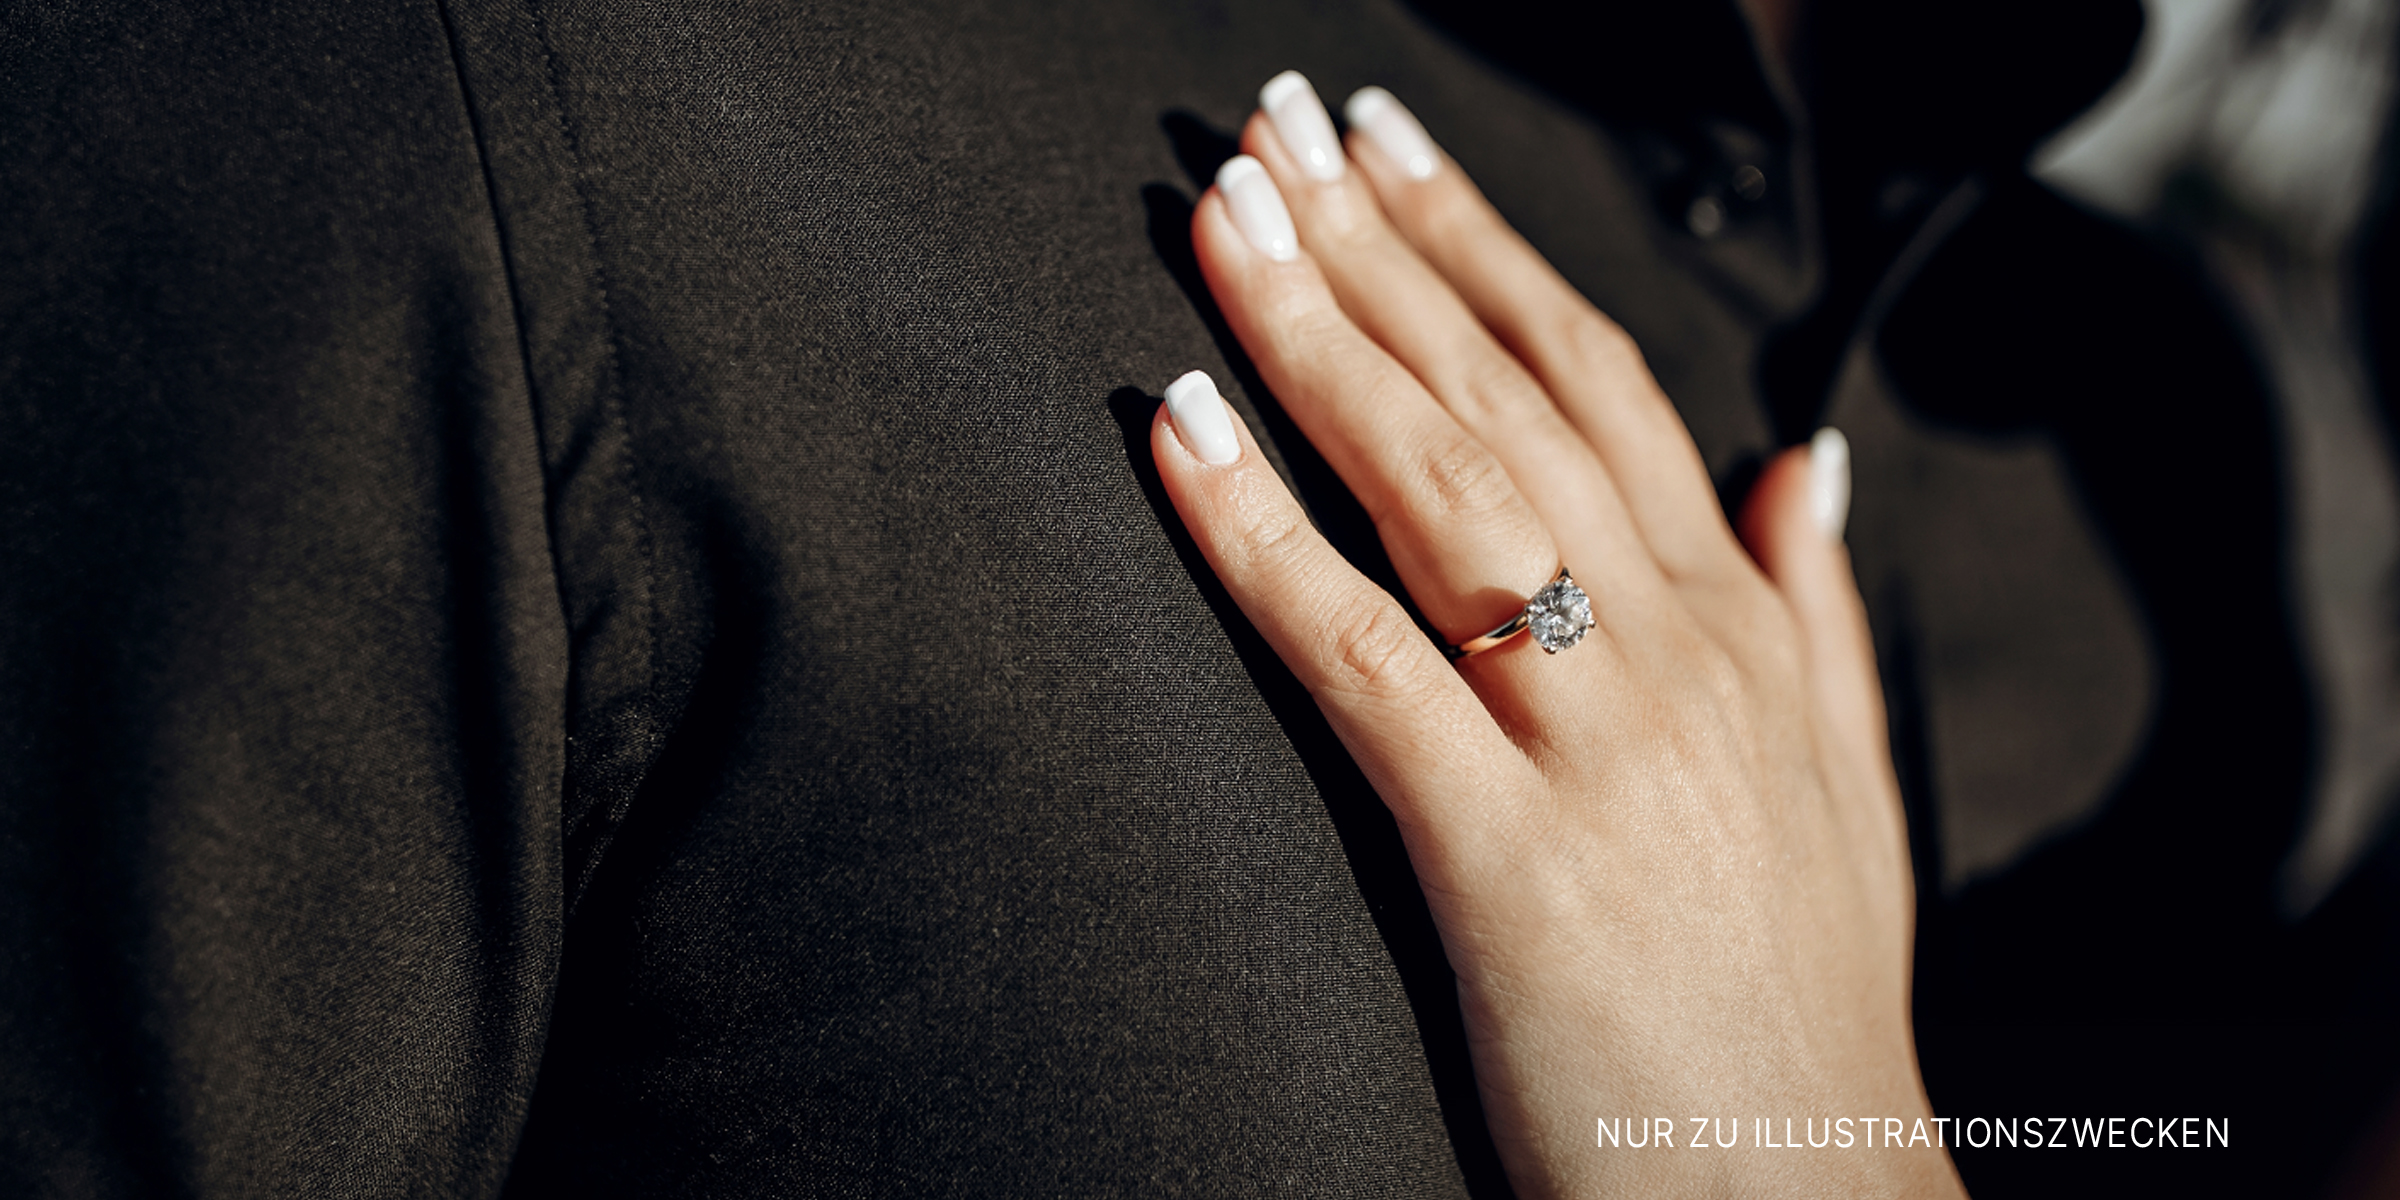 Die Hand einer Frau mit einem Ehering | Quelle: Shutterstock